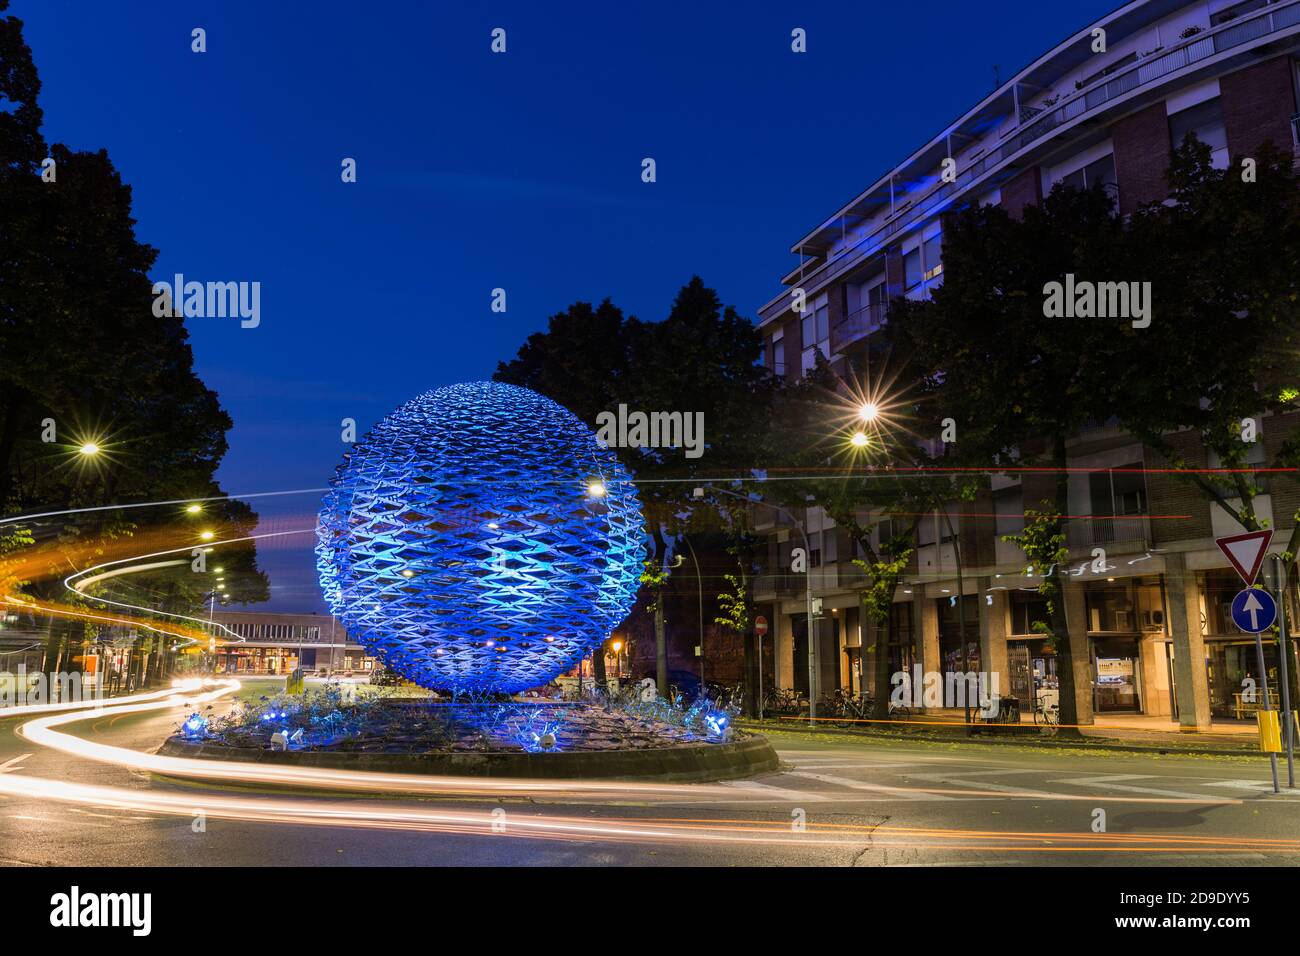 Große dekorative beleuchtet in blauen Ball auf einer Straße mit schönen Auto Lichter in der Nacht. Treviso Italien Stockfoto